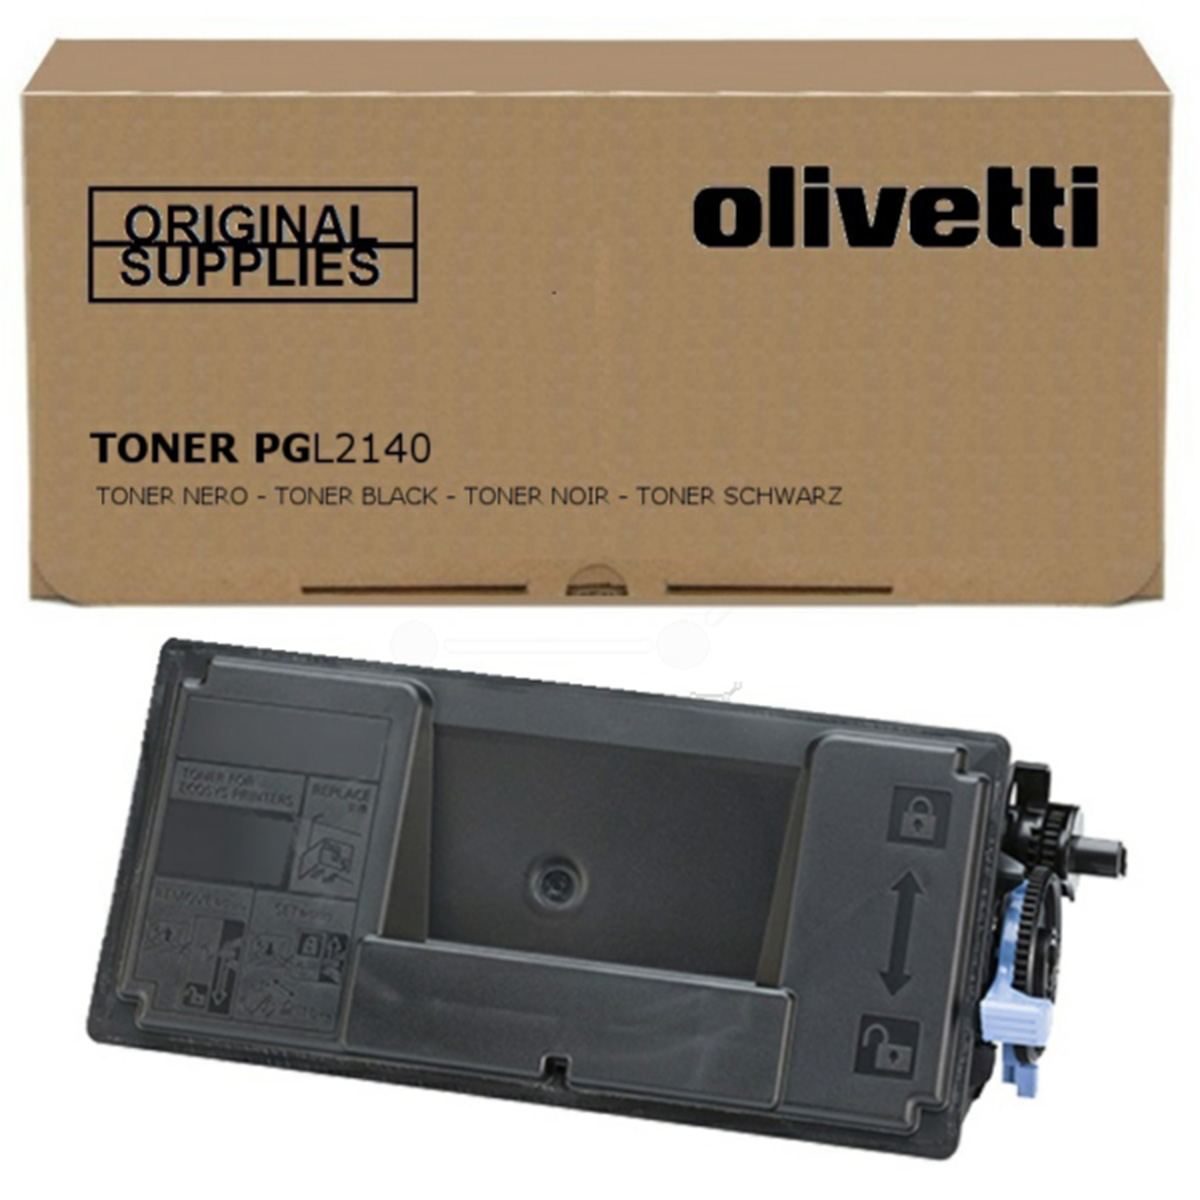 Olivetti B1071 Toner Do Olivetti D Copia 4003 Mf 4004 Mf Pg L 2140